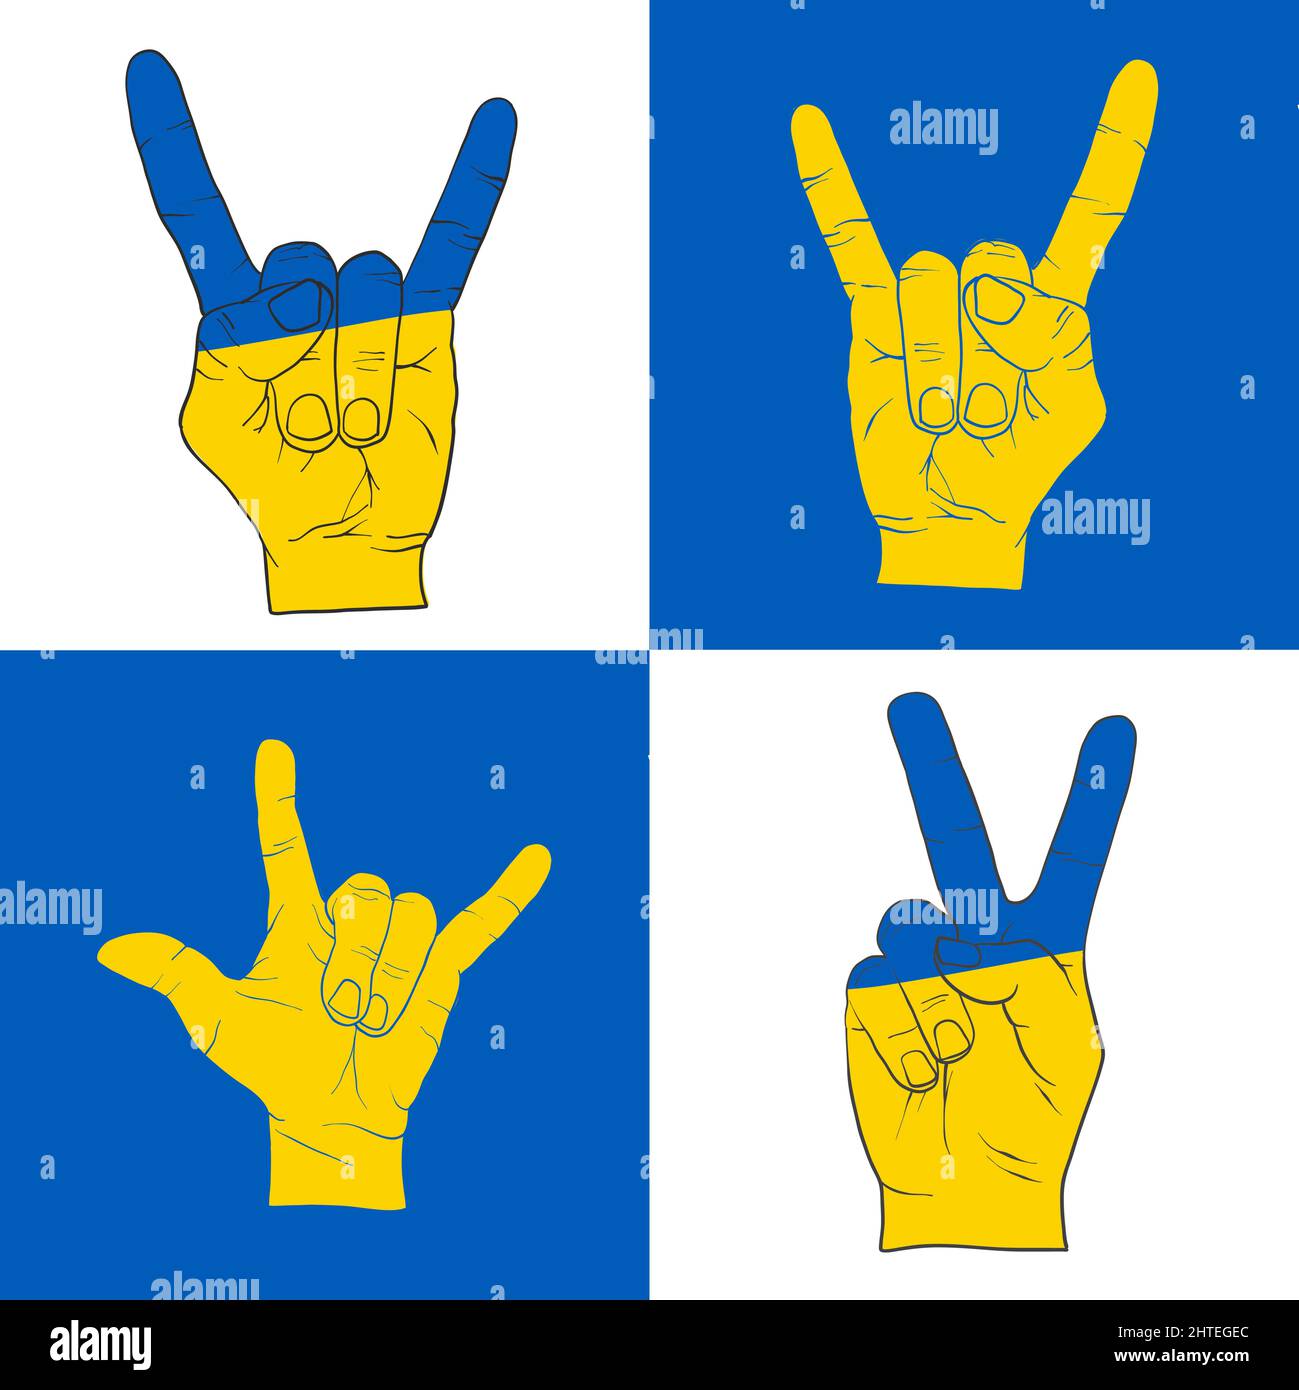 Vari segni pacifici della mano. Icona di sostegno per Kyiv e Ucraina. Resta forte insieme. Simbolo patriottico, icona.-SupplementalCategories+=immagini Illustrazione Vettoriale